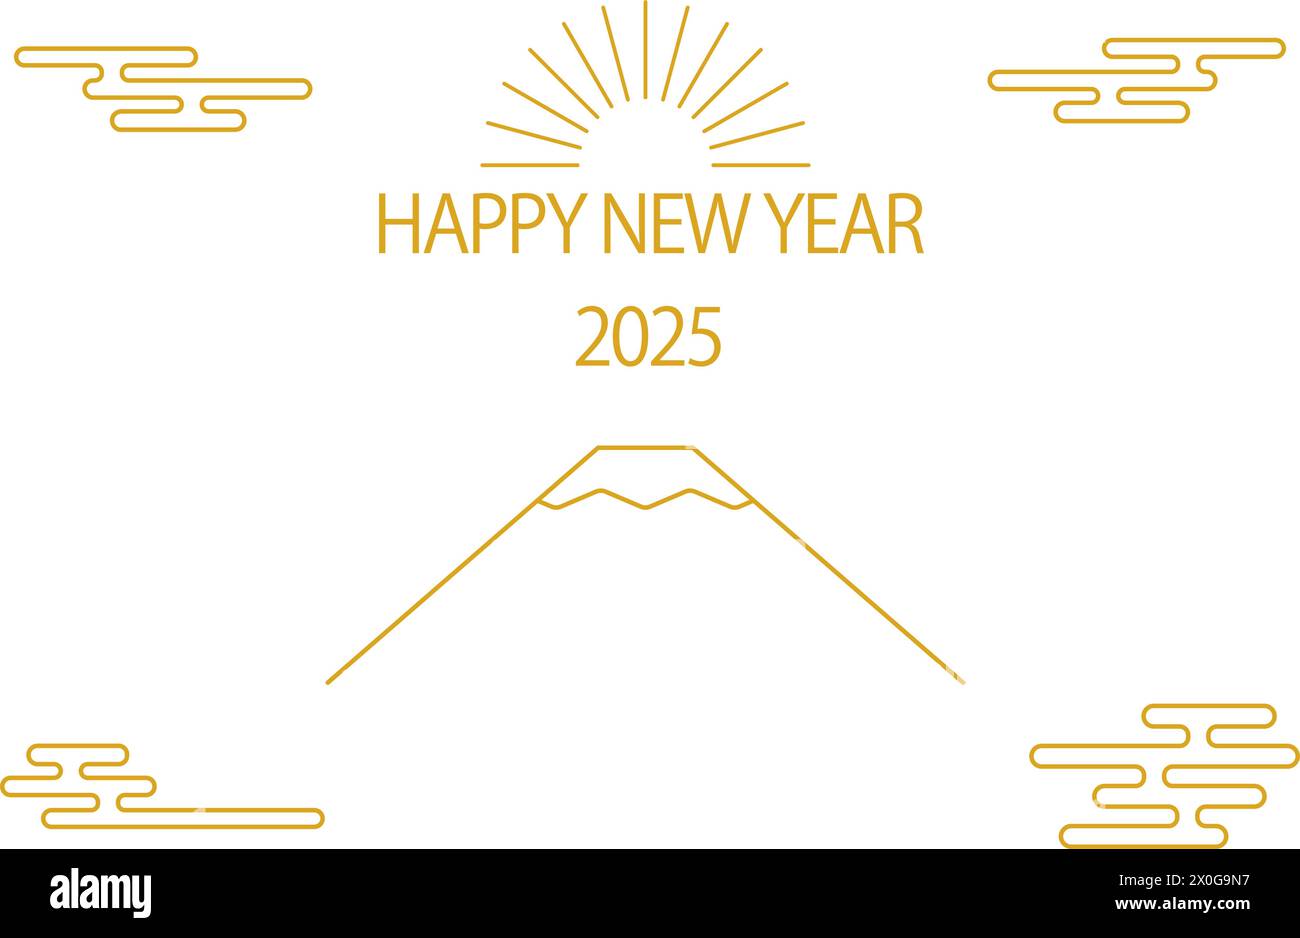 Neujahrskarte im japanischen Stil für 2025, einfache Linienzeichnung des Mt. Fuji und der erste Sonnenaufgang des Jahres - Übersetzung: Vielen Dank auch in diesem Jahr. Stock Vektor